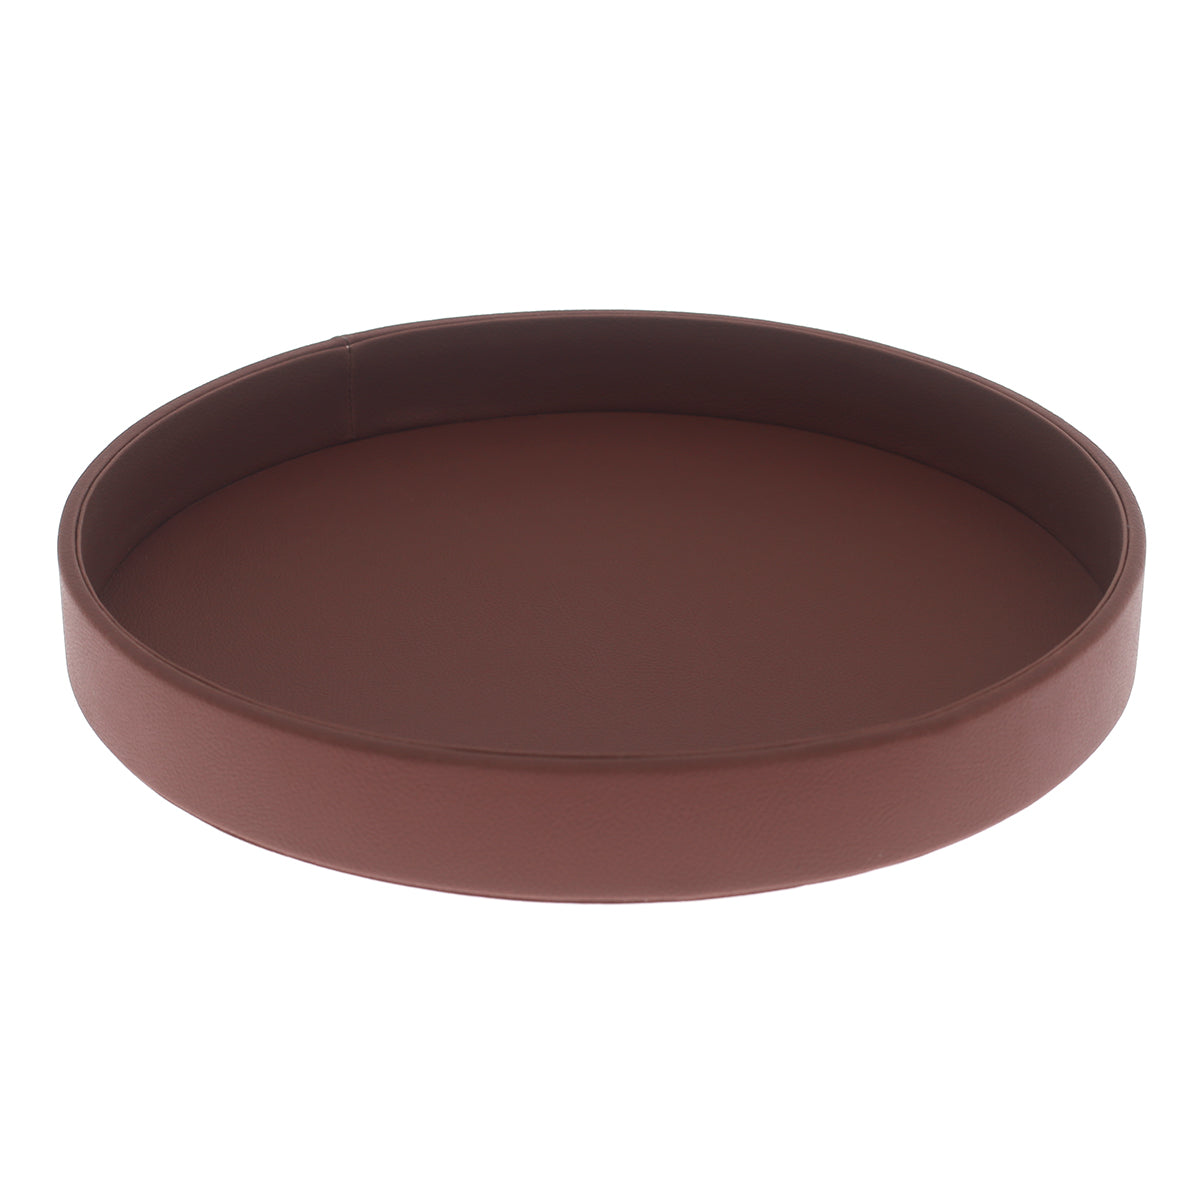 Round Platter Tray Brown